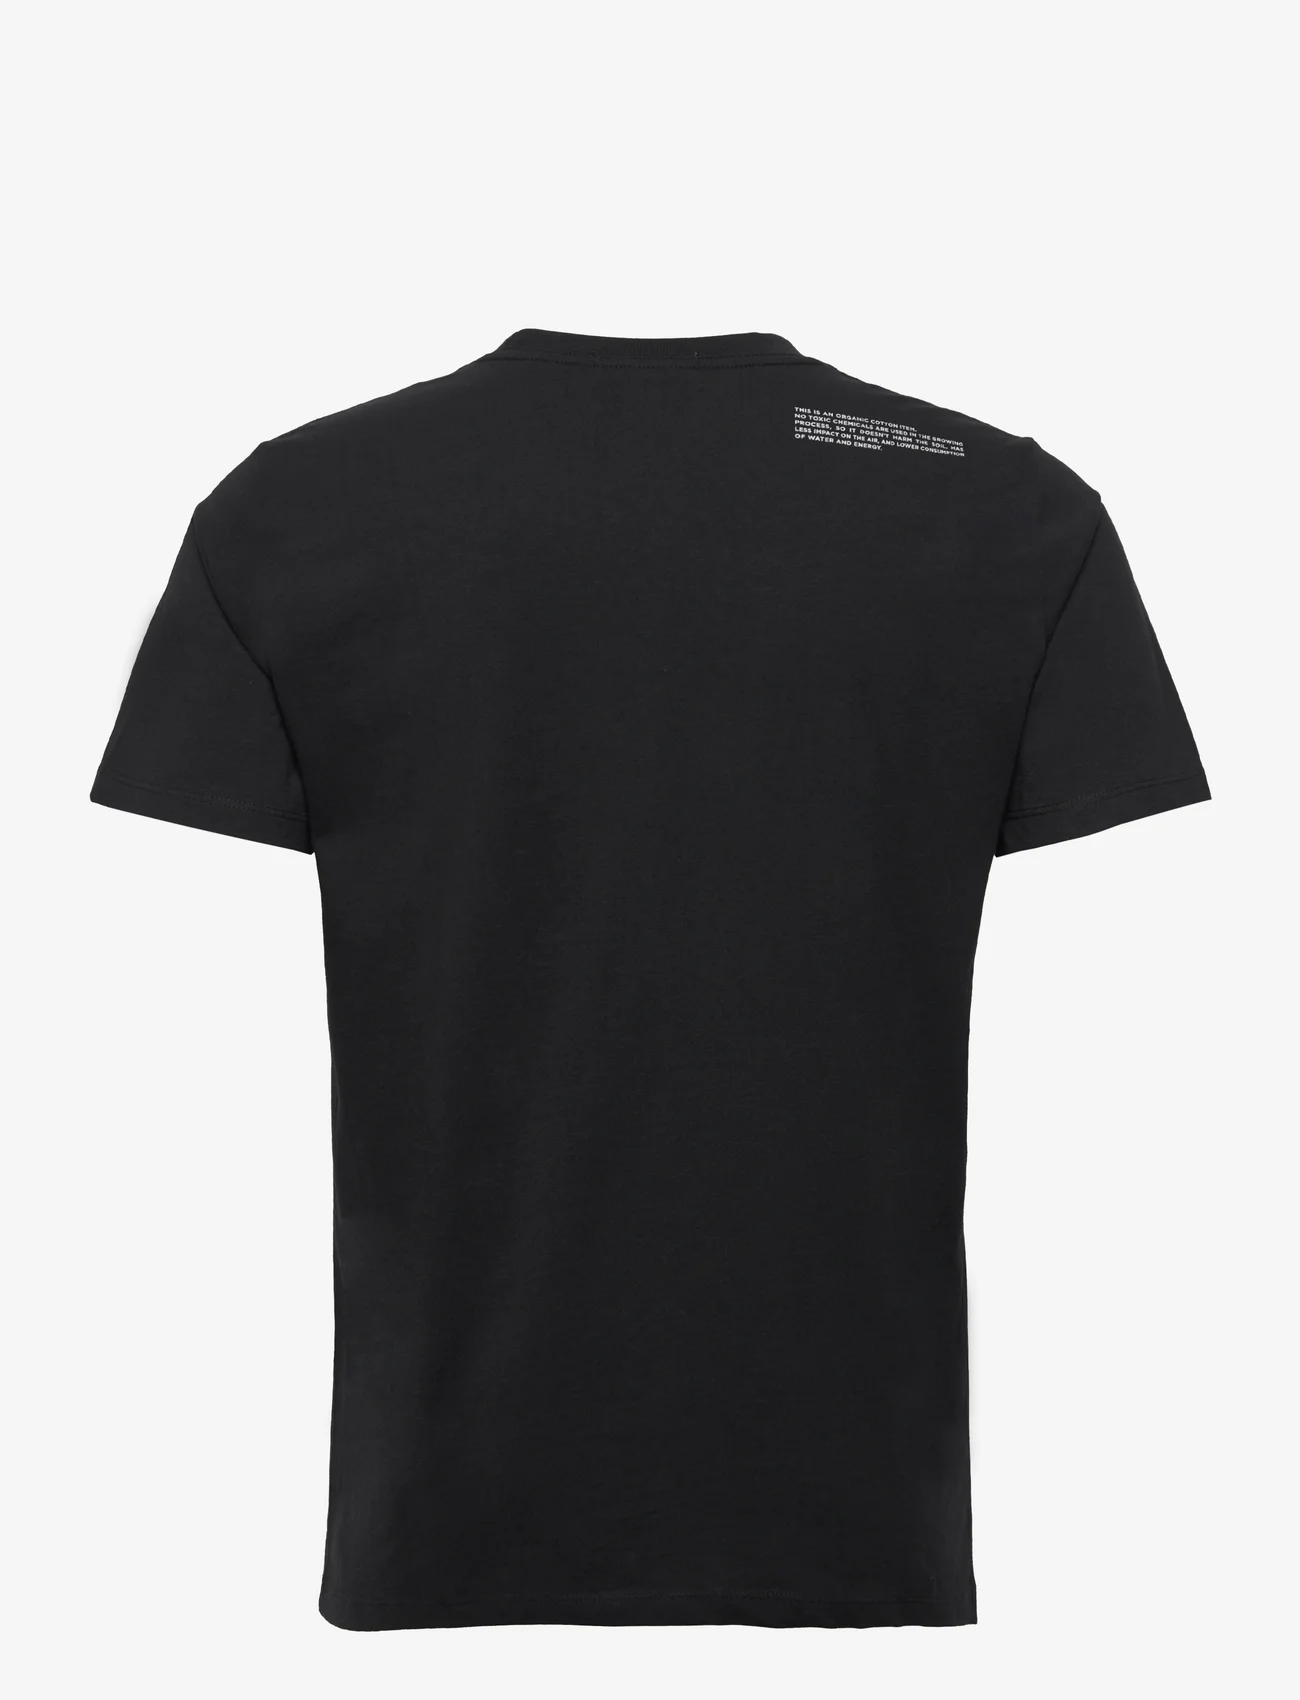 Replay - T-Shirt SECOND LIFE - basic t-shirts - black - 1